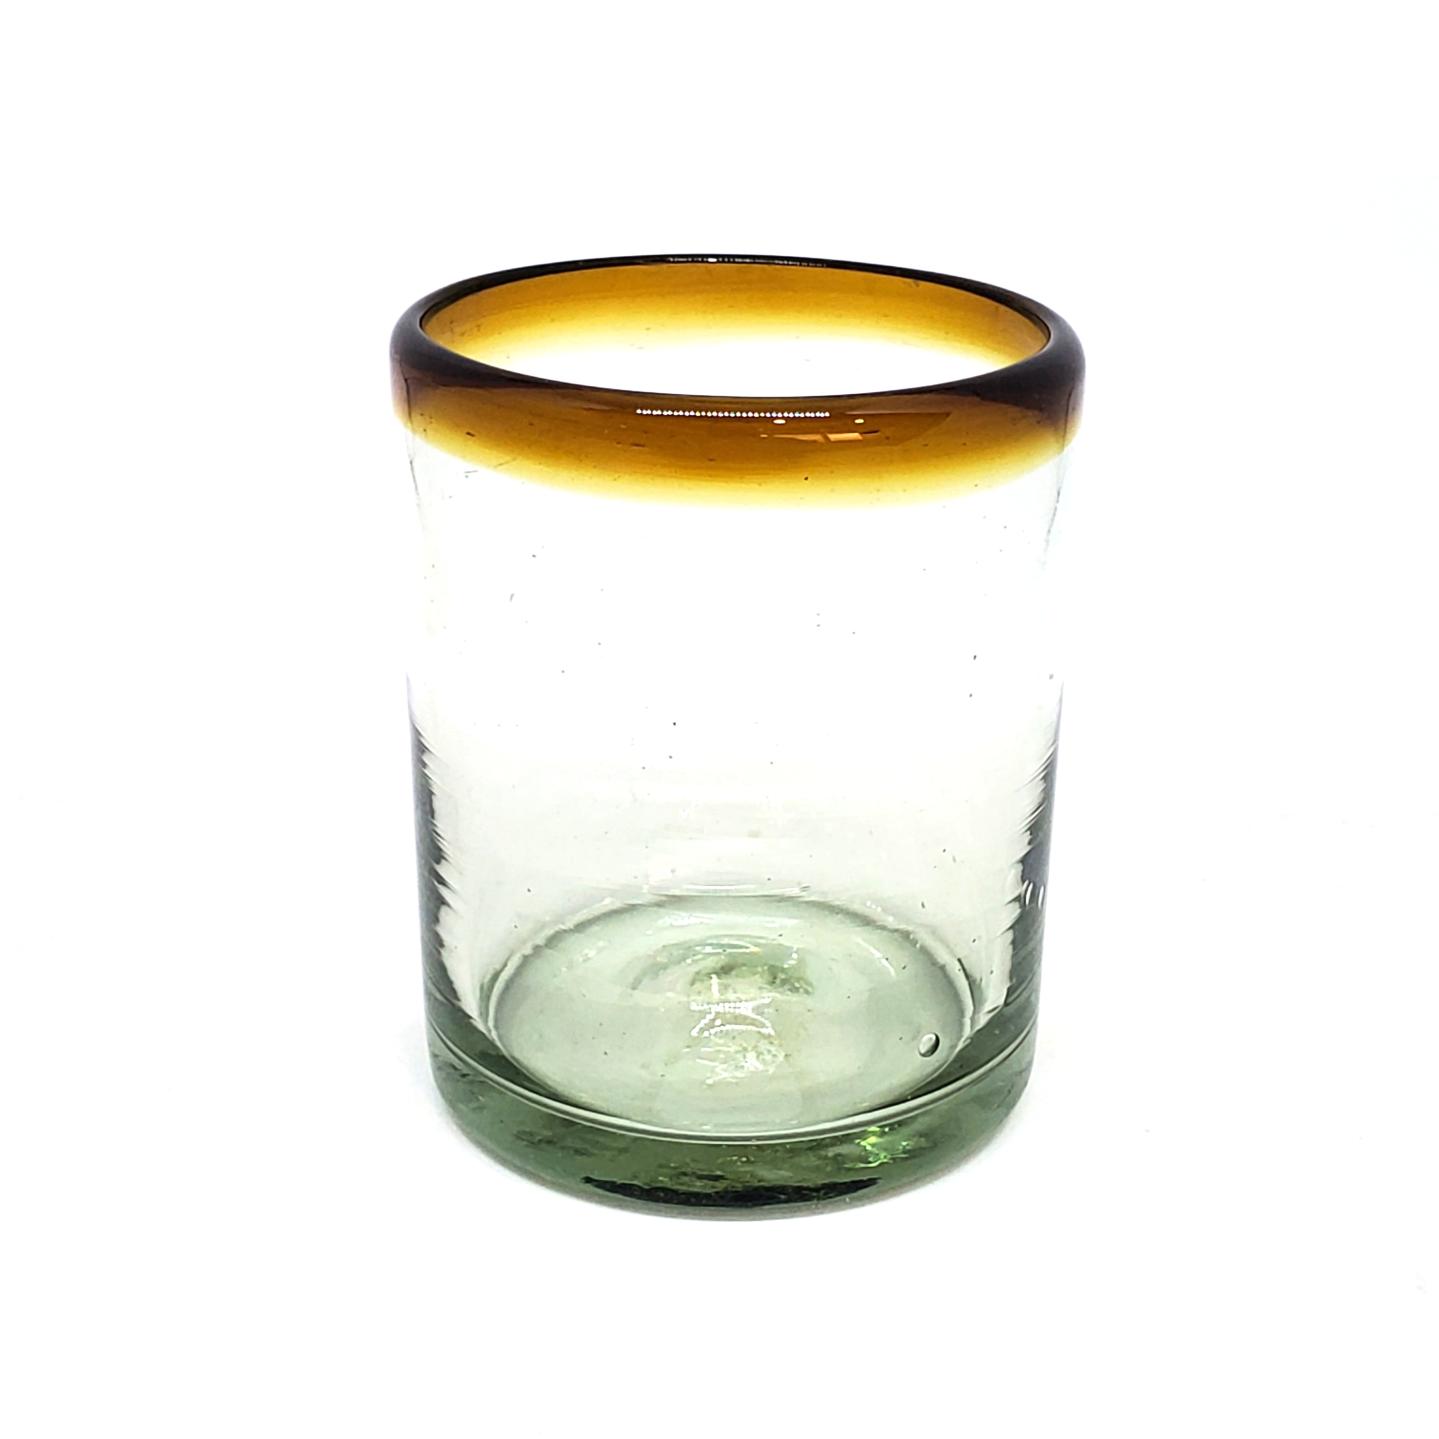 Vasos de Vidrio Soplado al Mayoreo / vasos chicos con borde color mbar / ste festivo juego de vasos es ideal para tomar leche con galletas o beber limonada en un da caluroso.